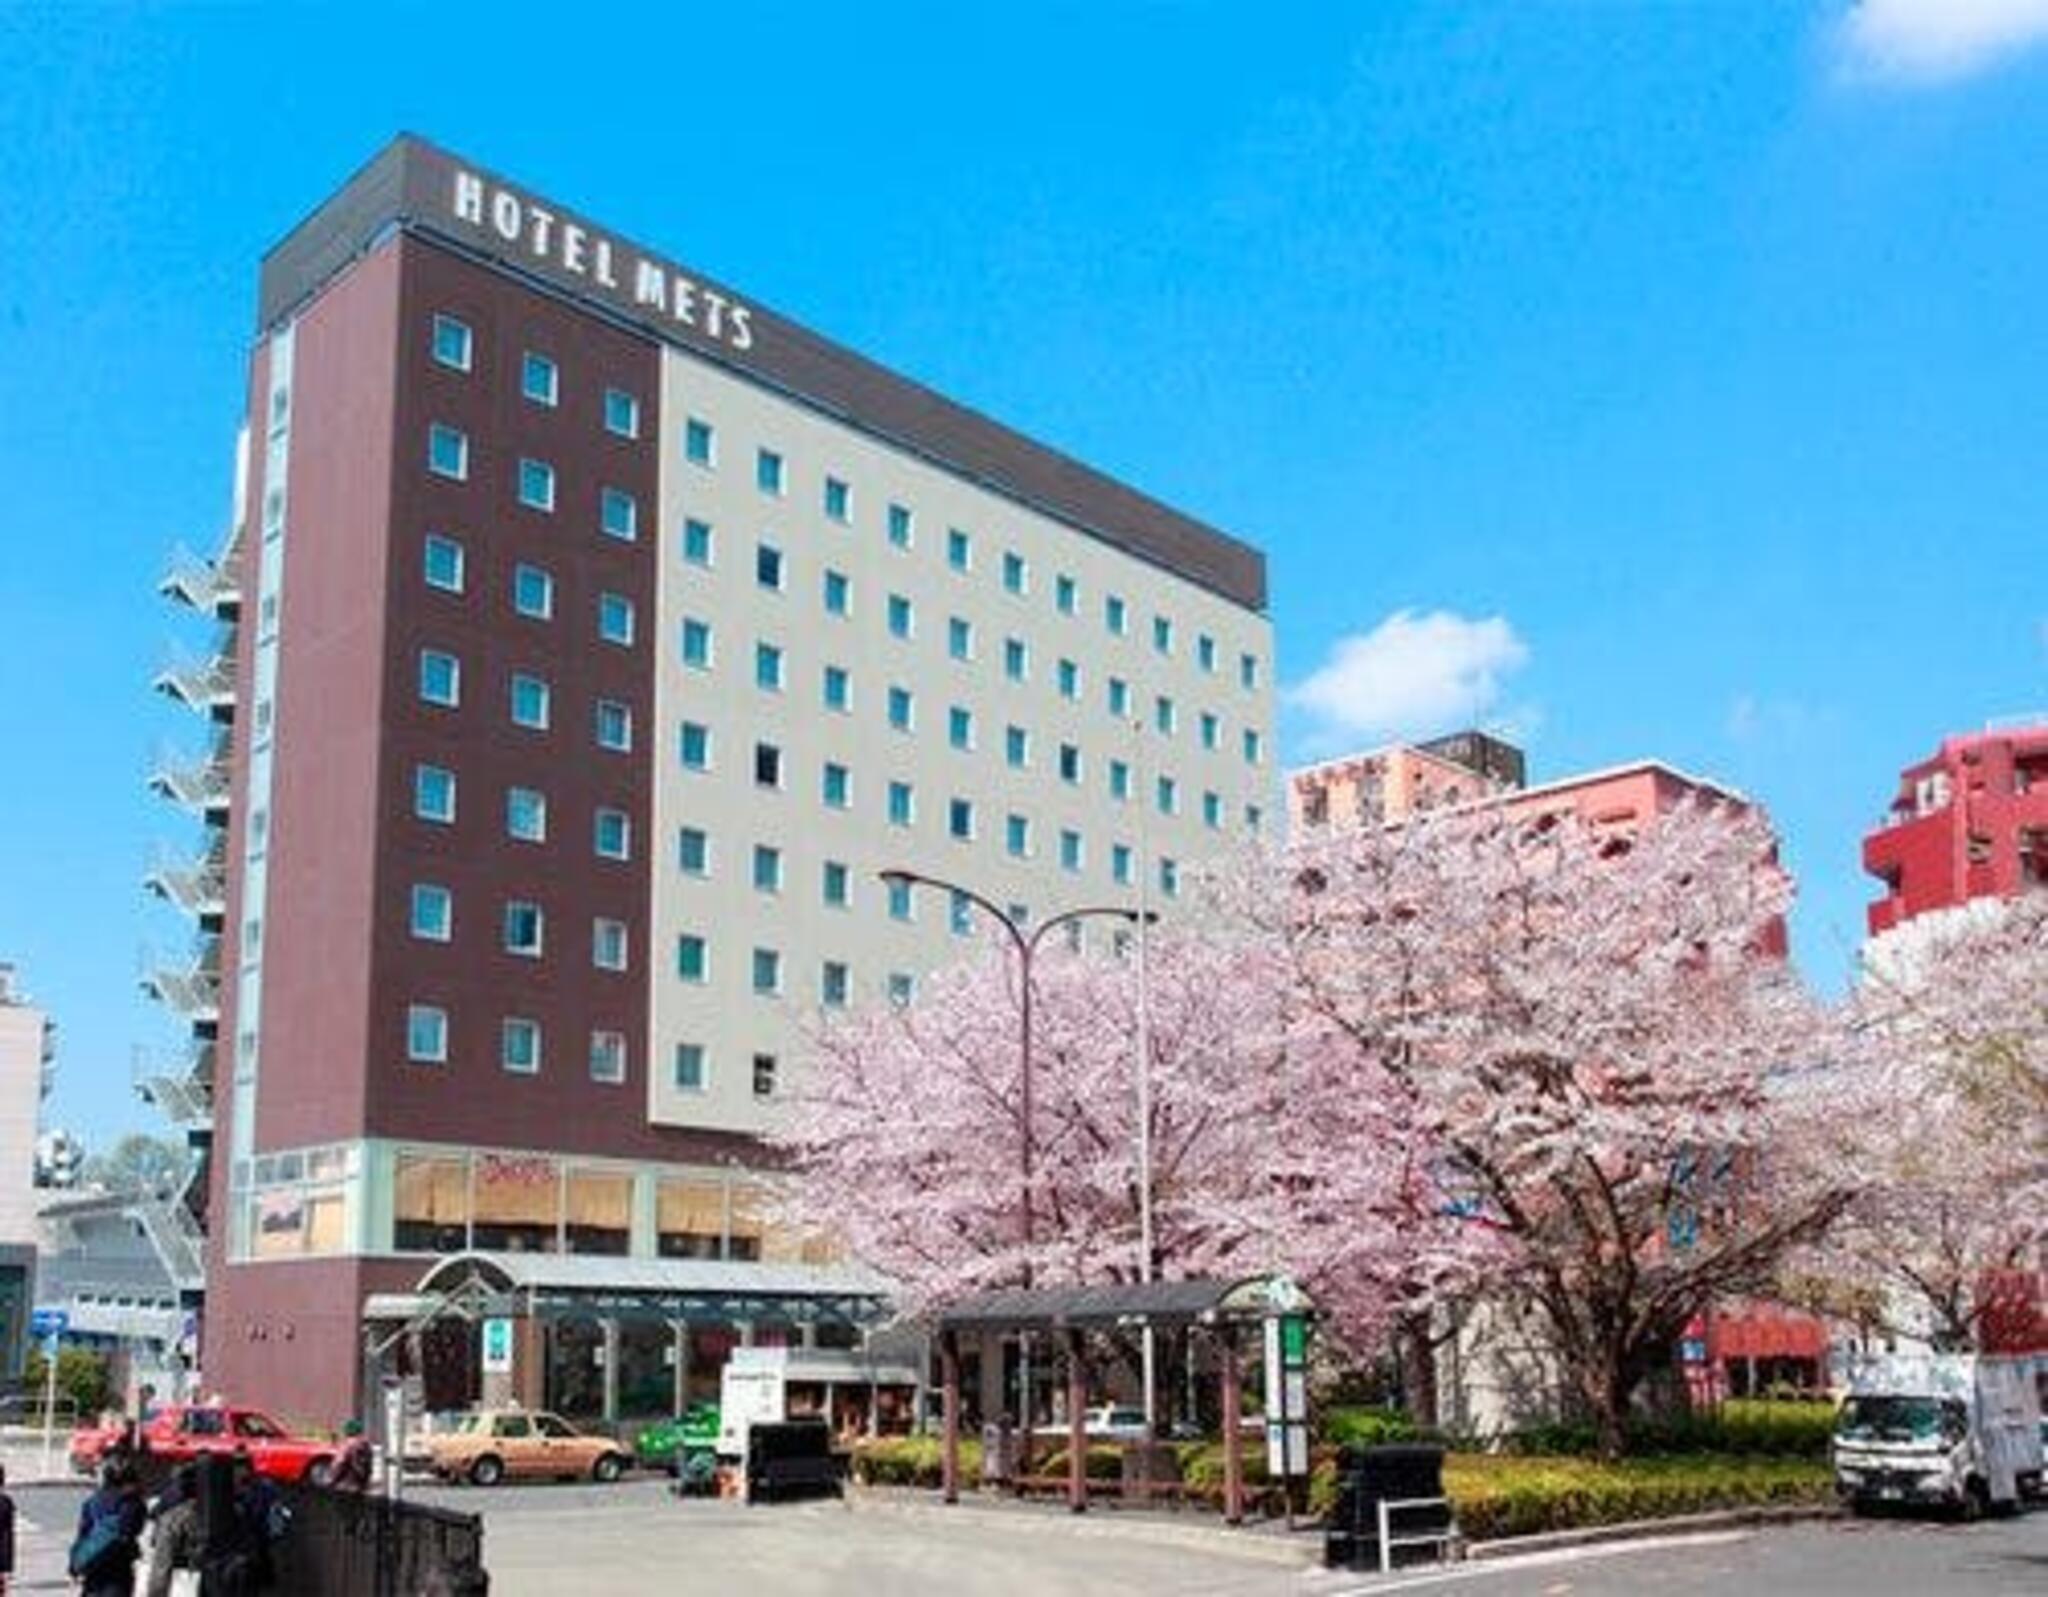 JR東日本ホテルメッツ 駒込の代表写真1